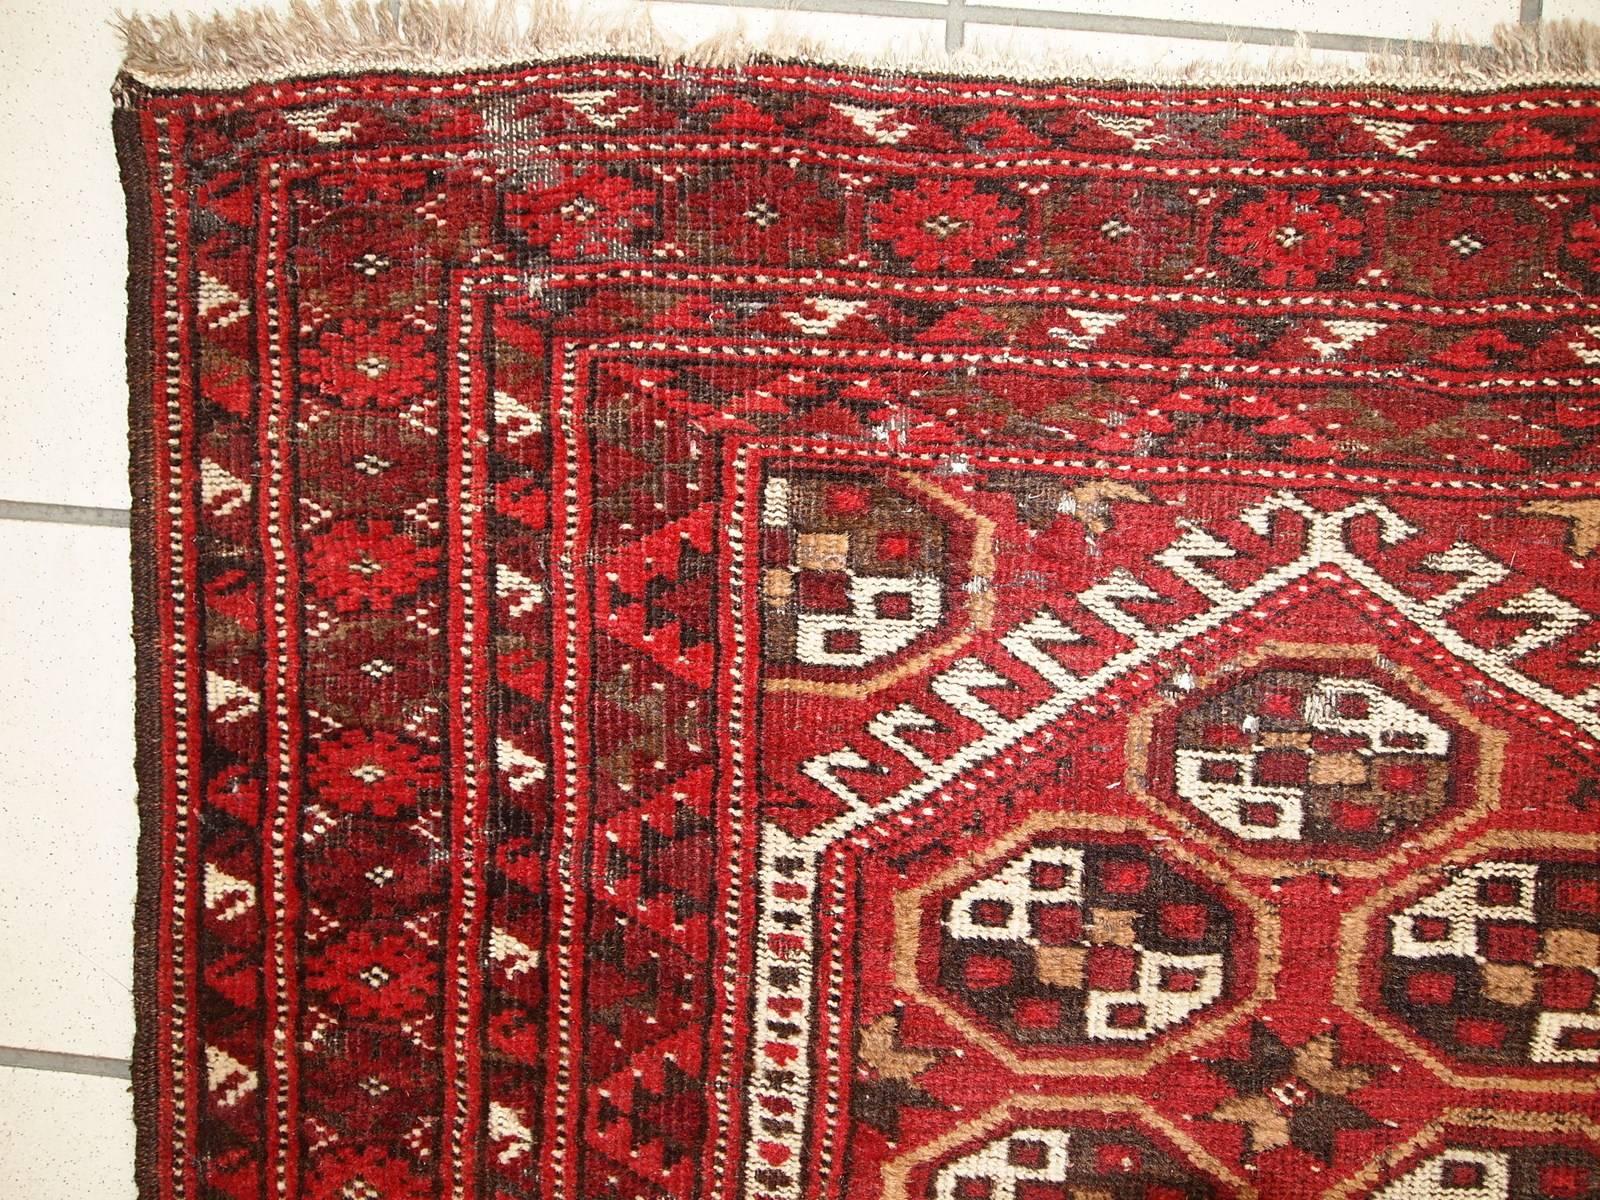 Ancien tapis afghan Adraskand en état d'origine. Le tapis est dans les couleurs traditionnelles de rouge, blanc et marron. Le tapis est une prière. Condit est original, a quelques dommages causés par les mites. Le tapis est assez fin et léger.